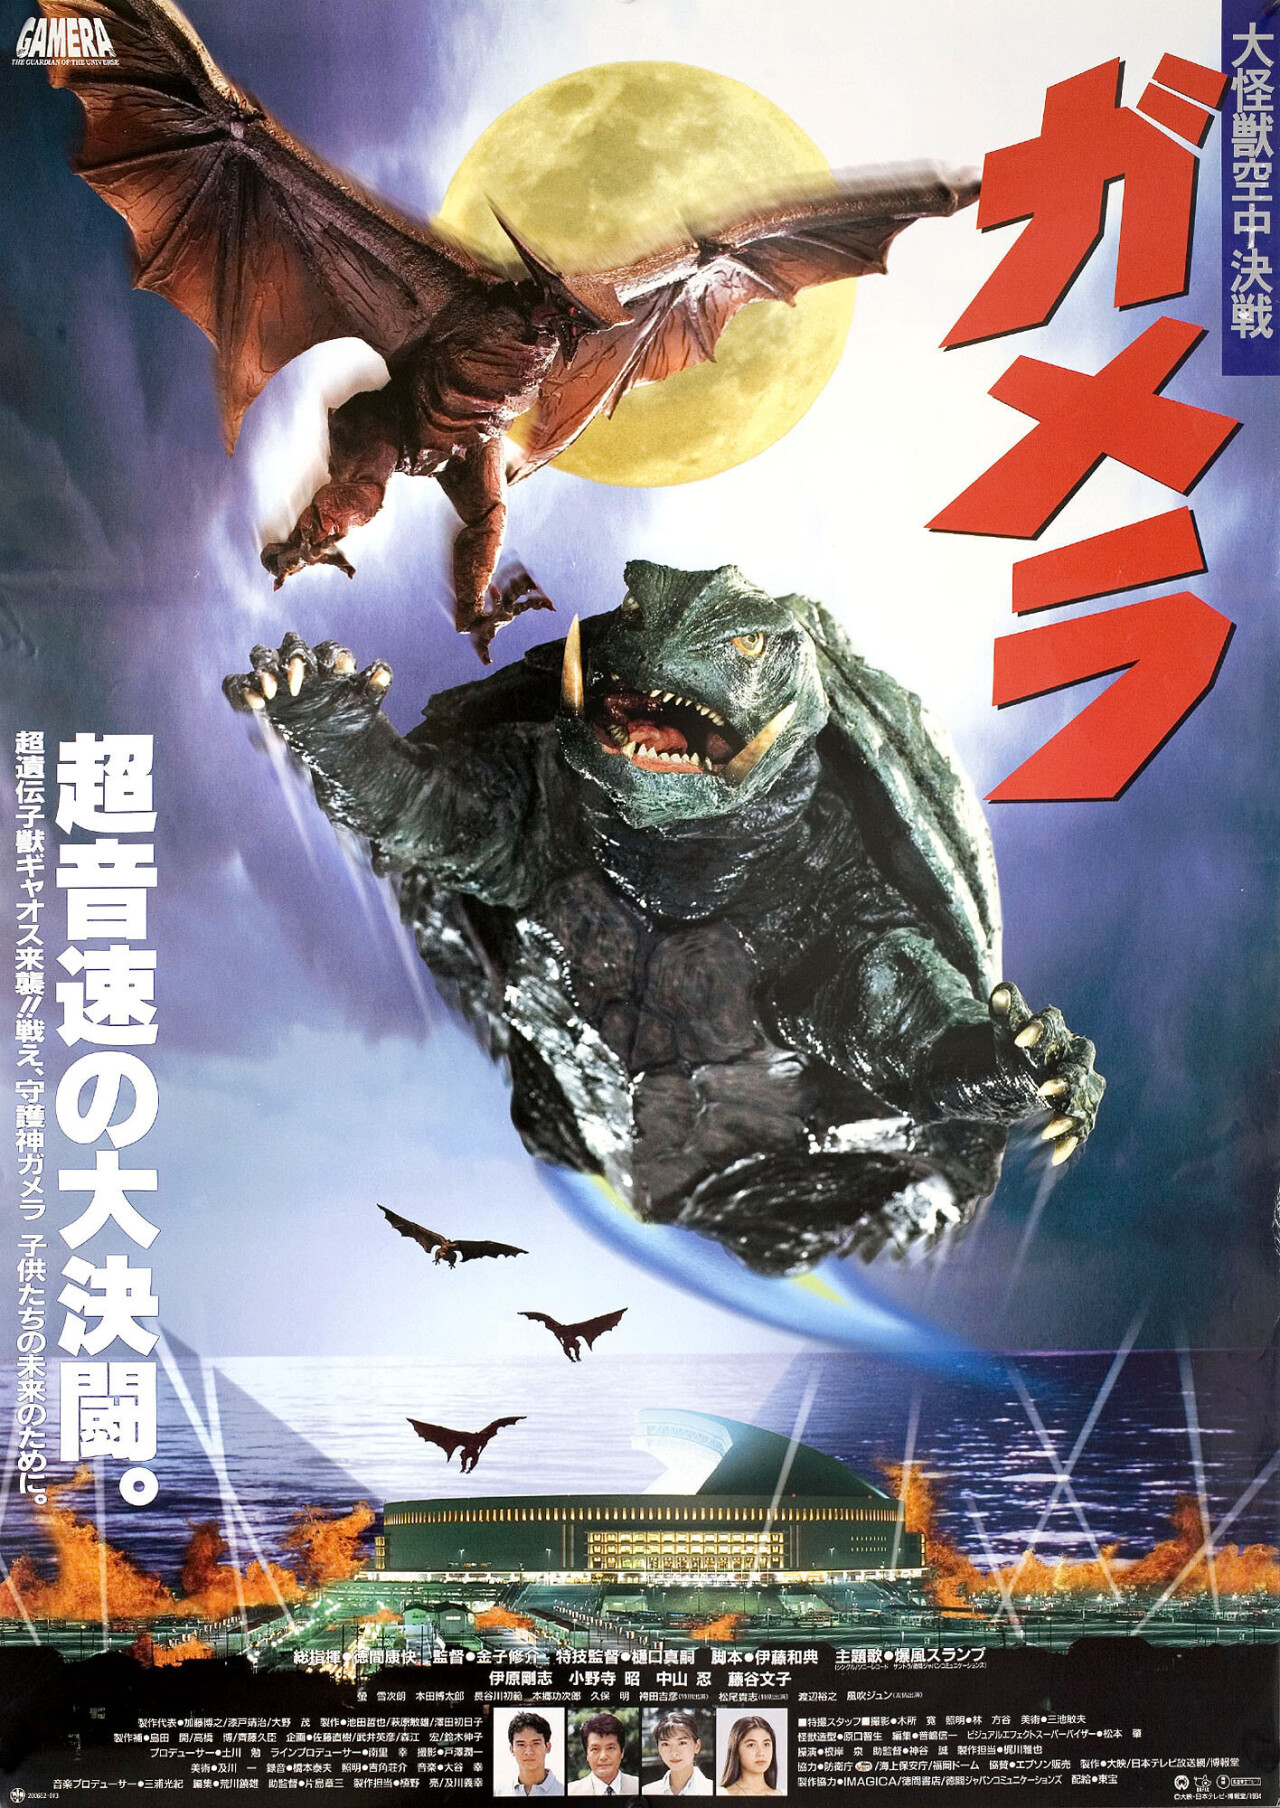 Гамера: Защитник Вселенной (Gamera Guardian of the Universe, 1995), режиссёр Сюсуке Канеко, японский постер к фильму (монстры, 1994 год)